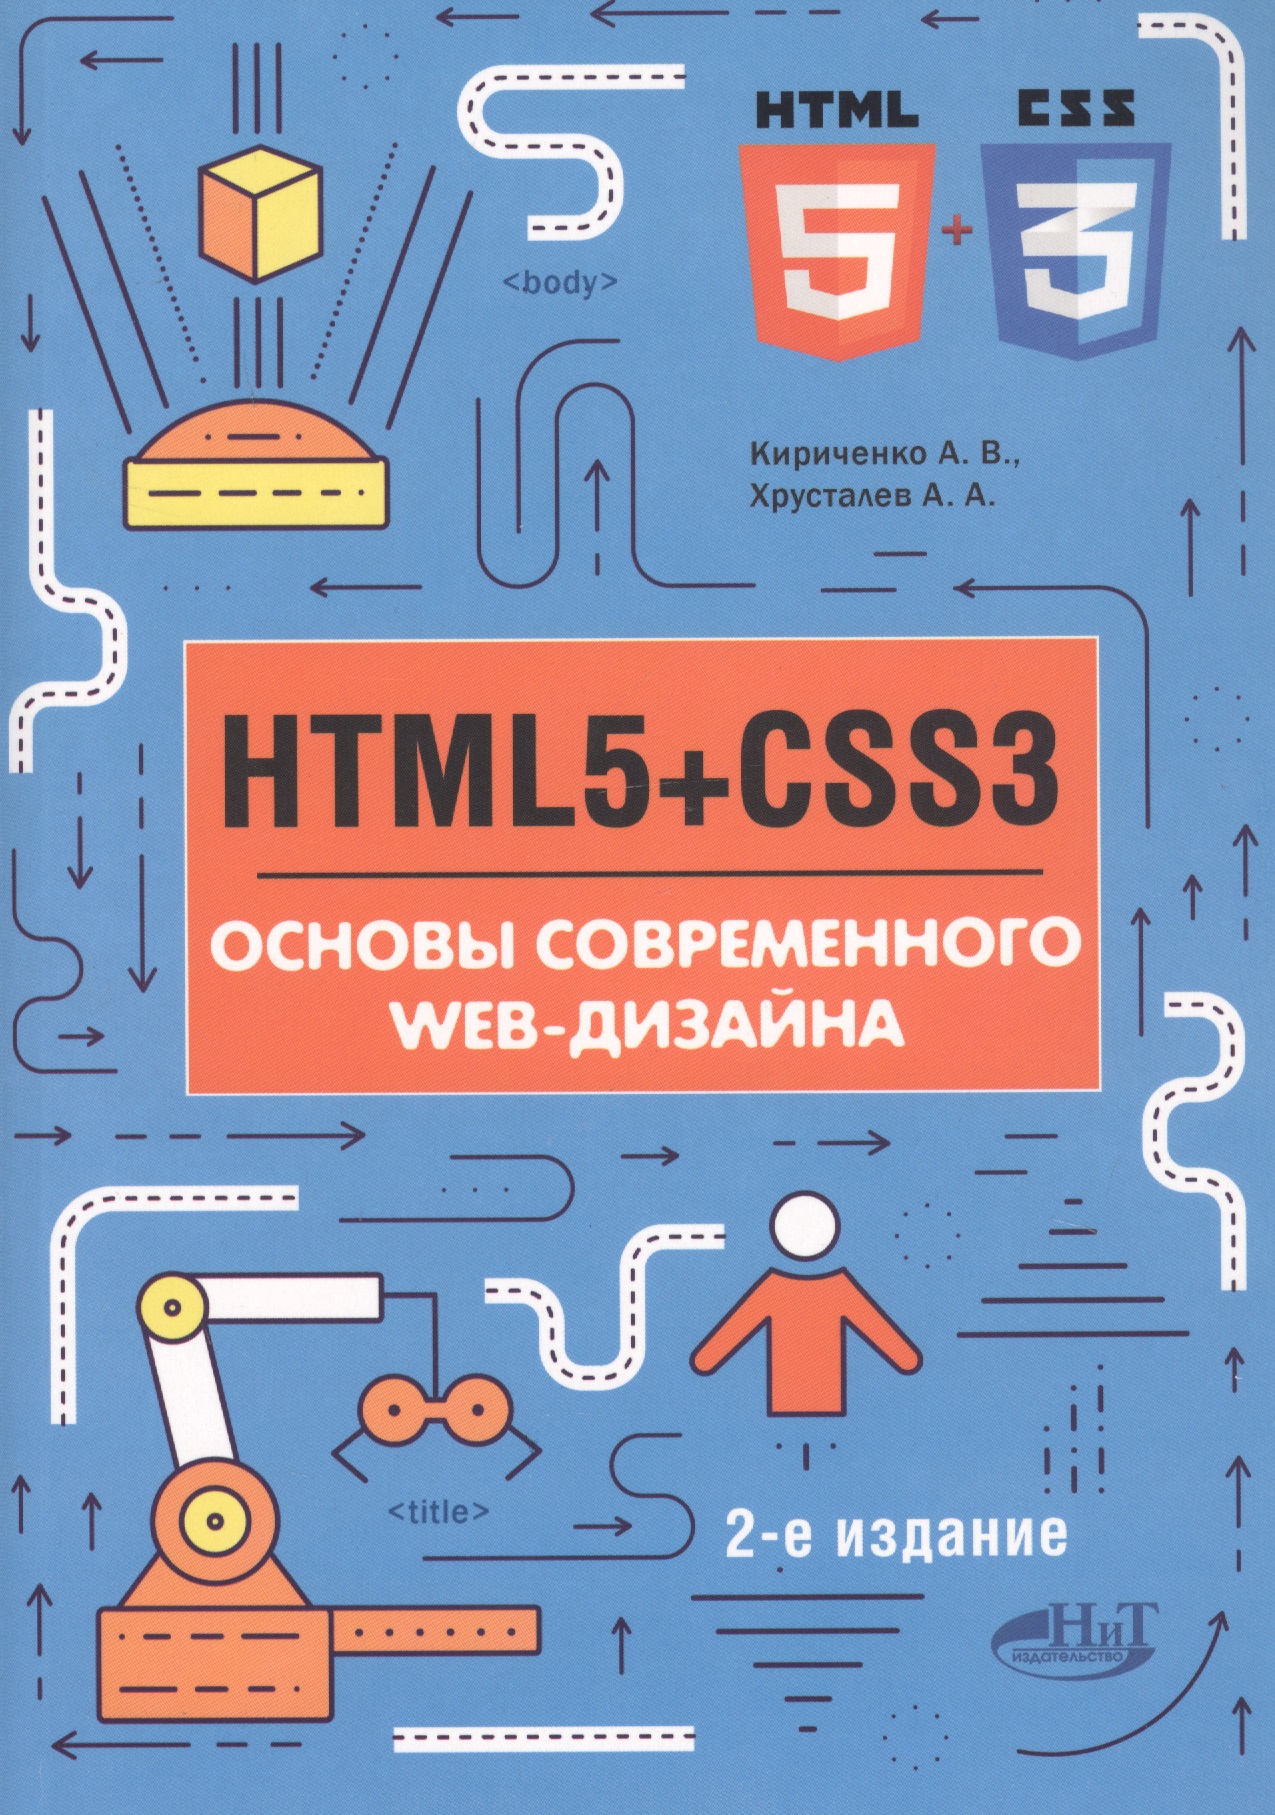 Ковпак Дмитрий Викторович HTML5+CSS3. Основы современного WEB-дизайна никсон р html5 и css3 мастер класс